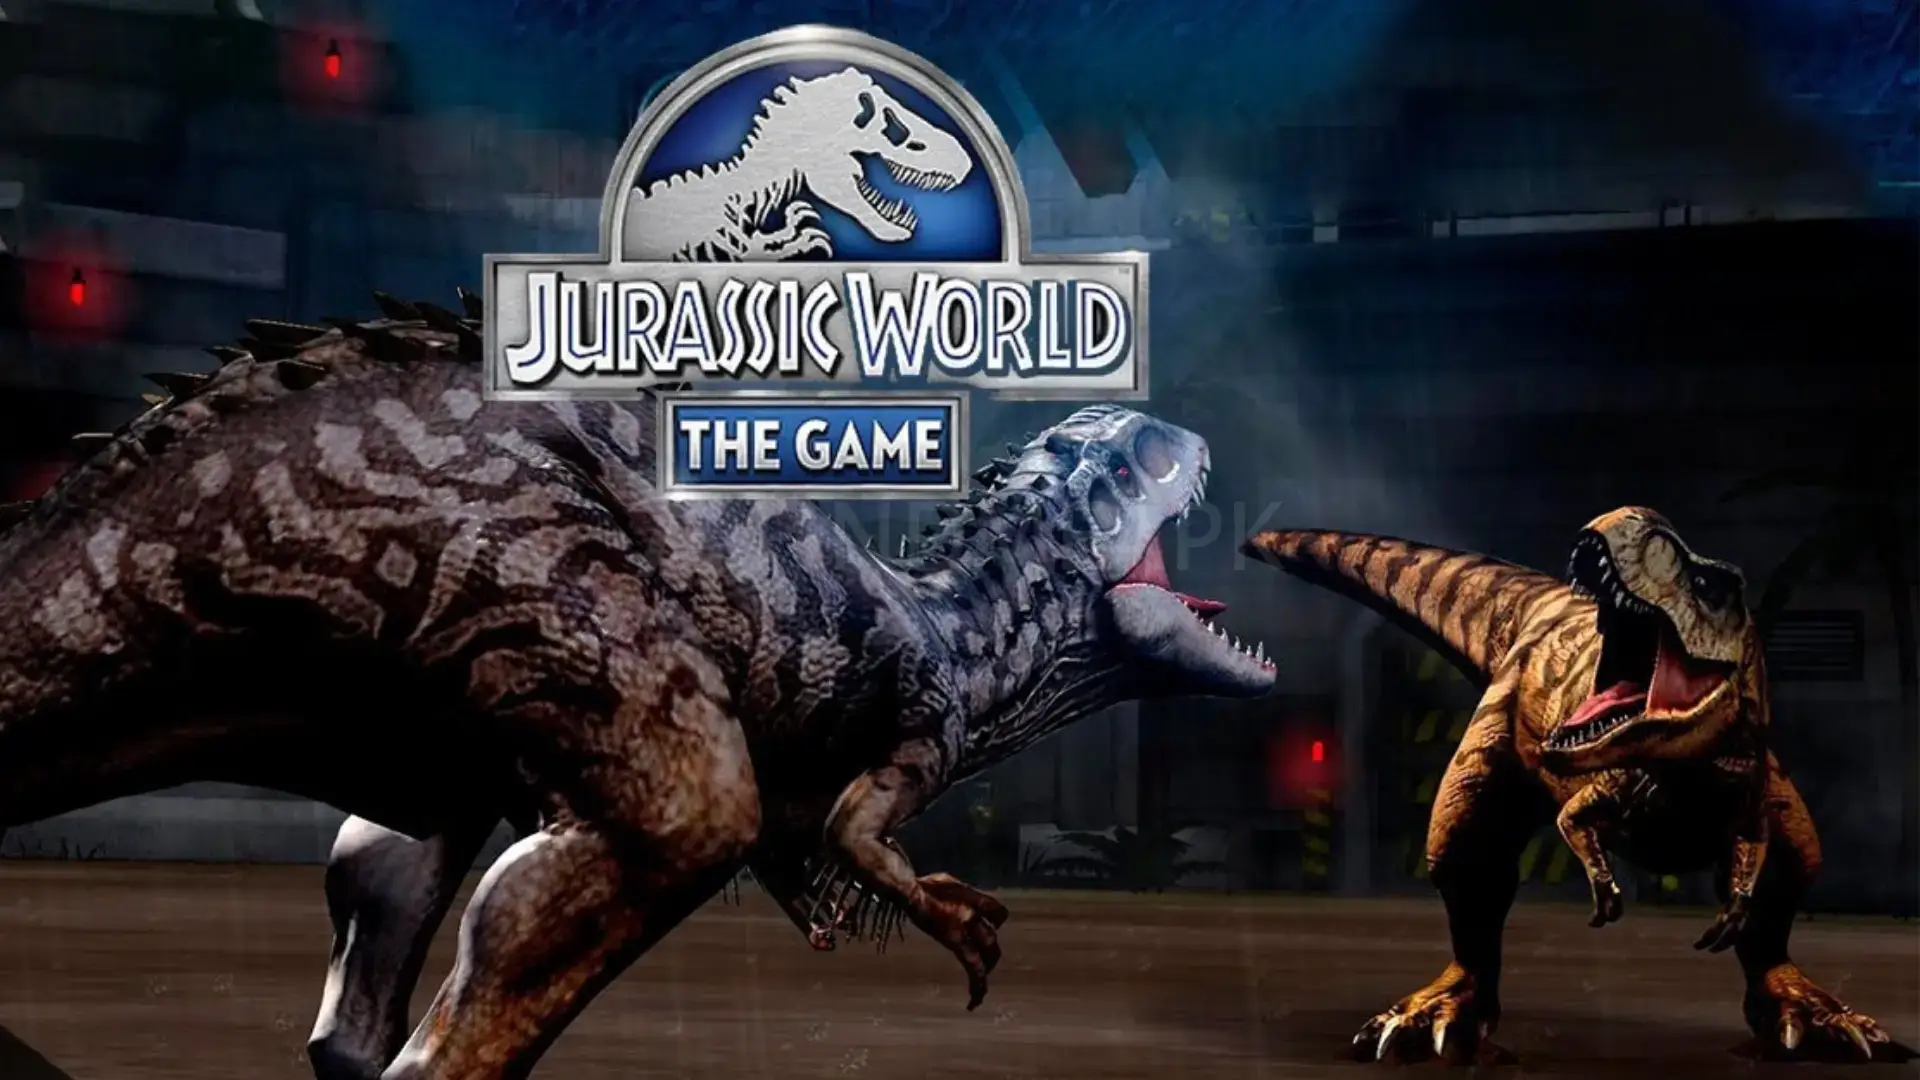 Игра динозавры сражаются. Игра Jurassic World "битва динозавров". Битвы динозавров Jurassic World. Мир Юрского периода игра бой. Мир Юрского периода драка.